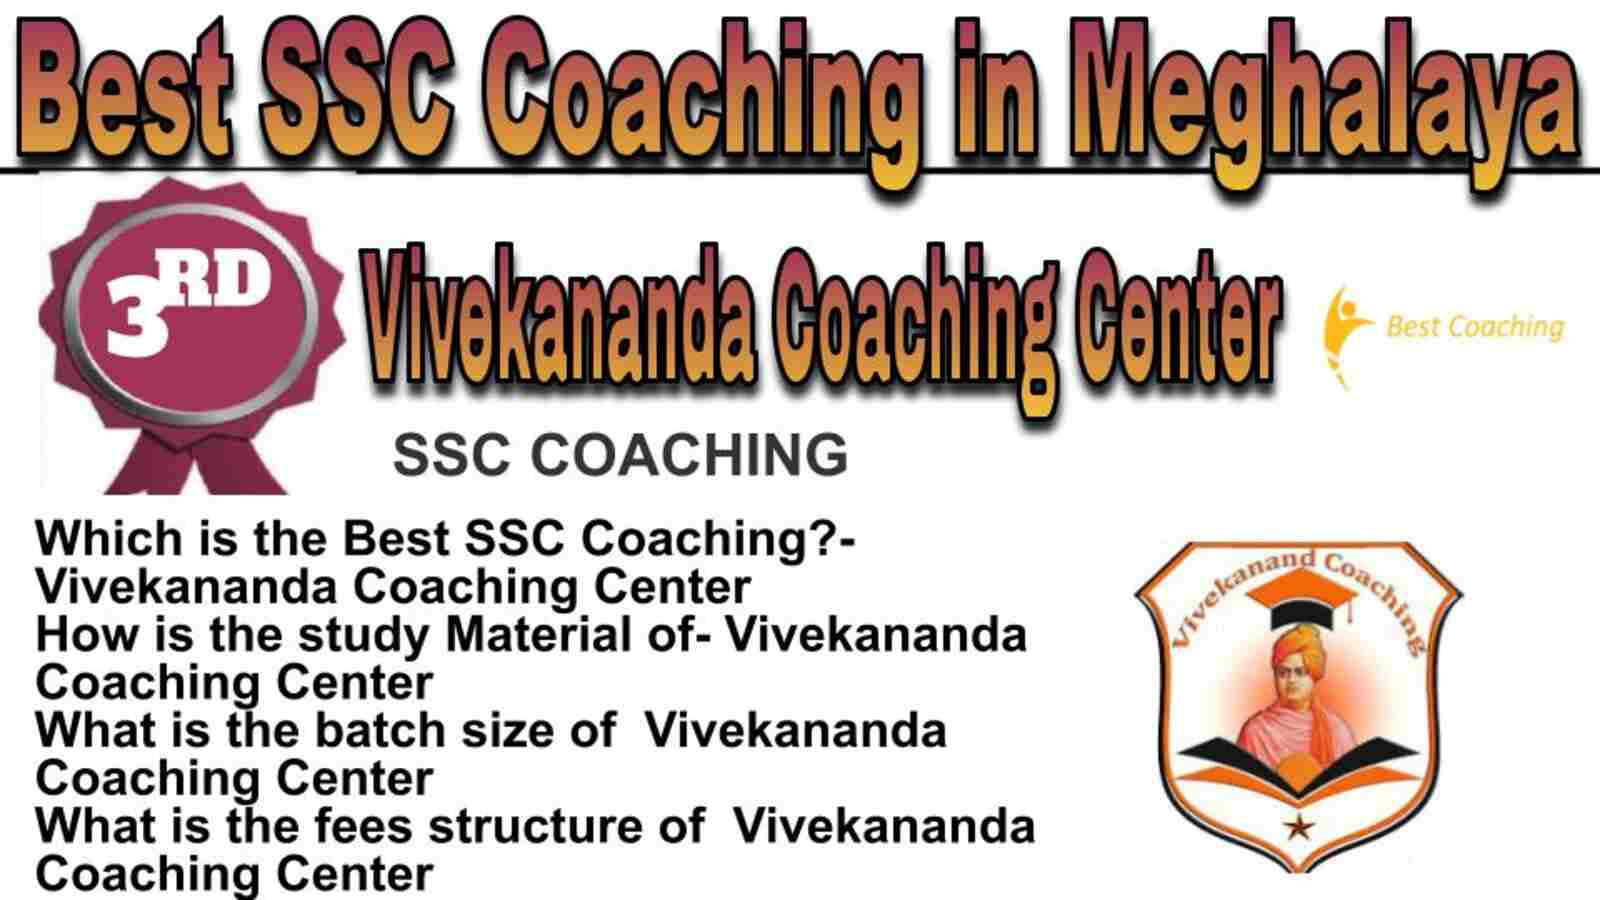 Rank 3 best SSC coaching in Meghalaya